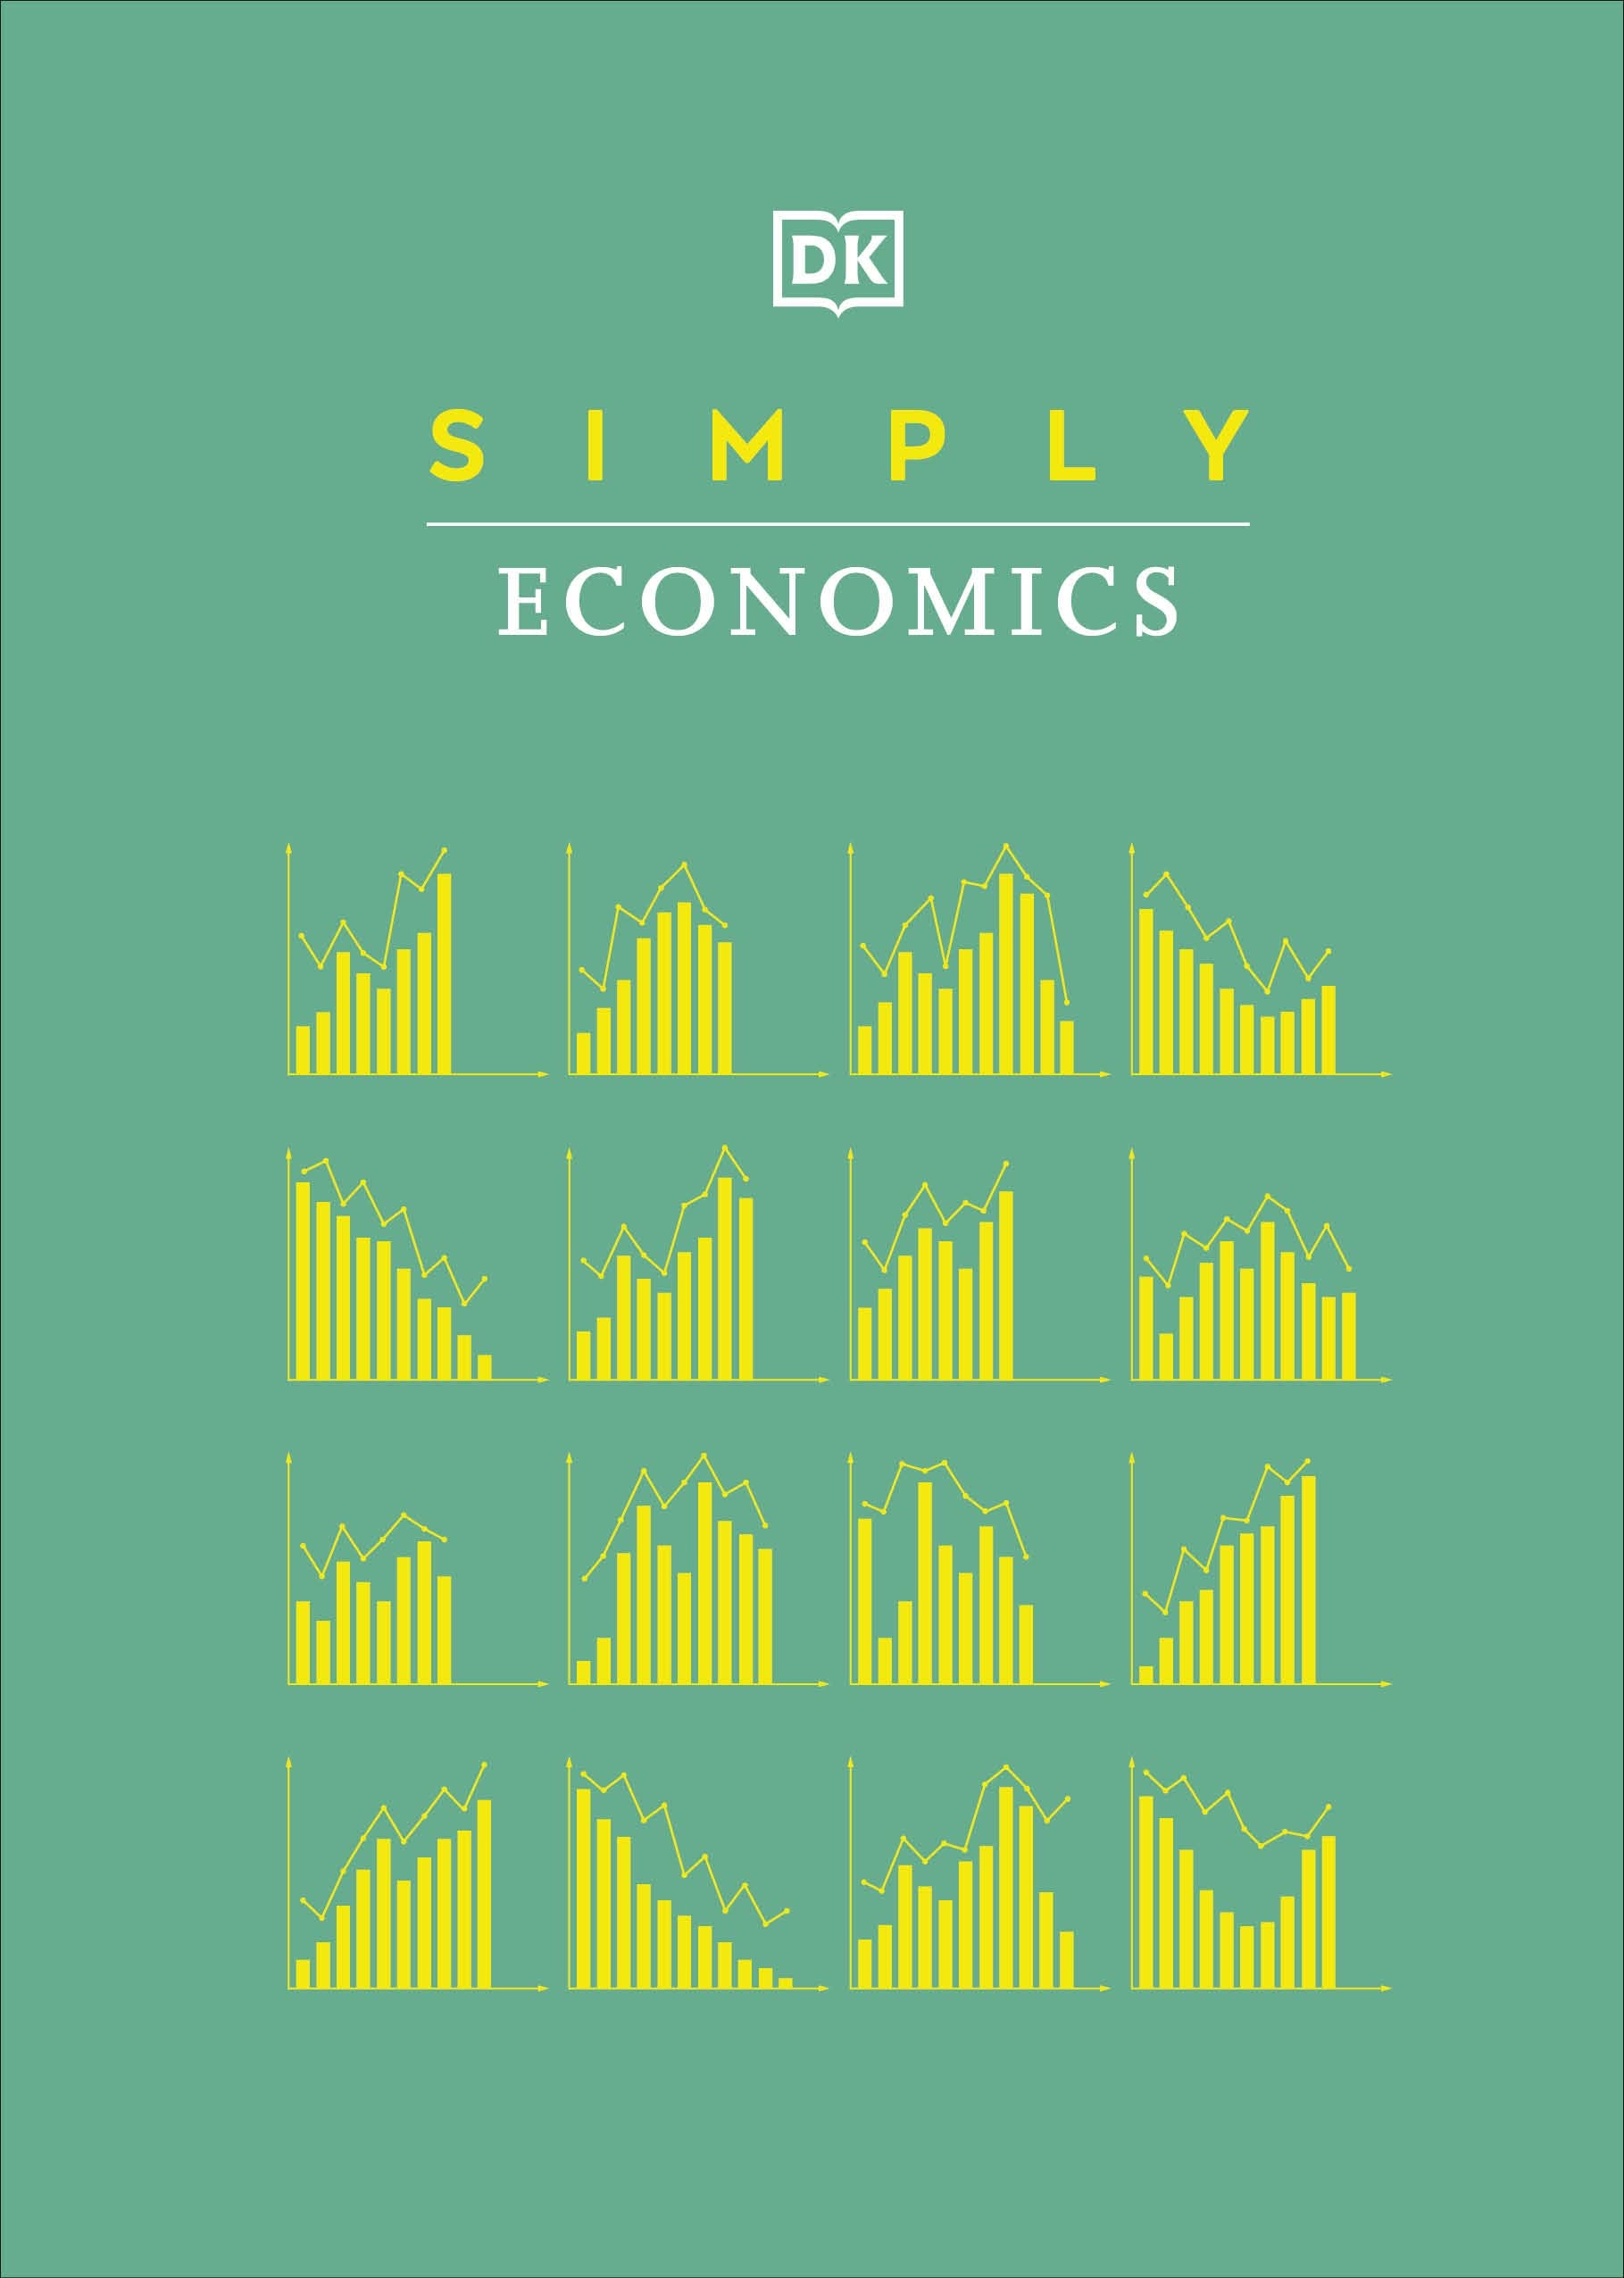 Simply Economics